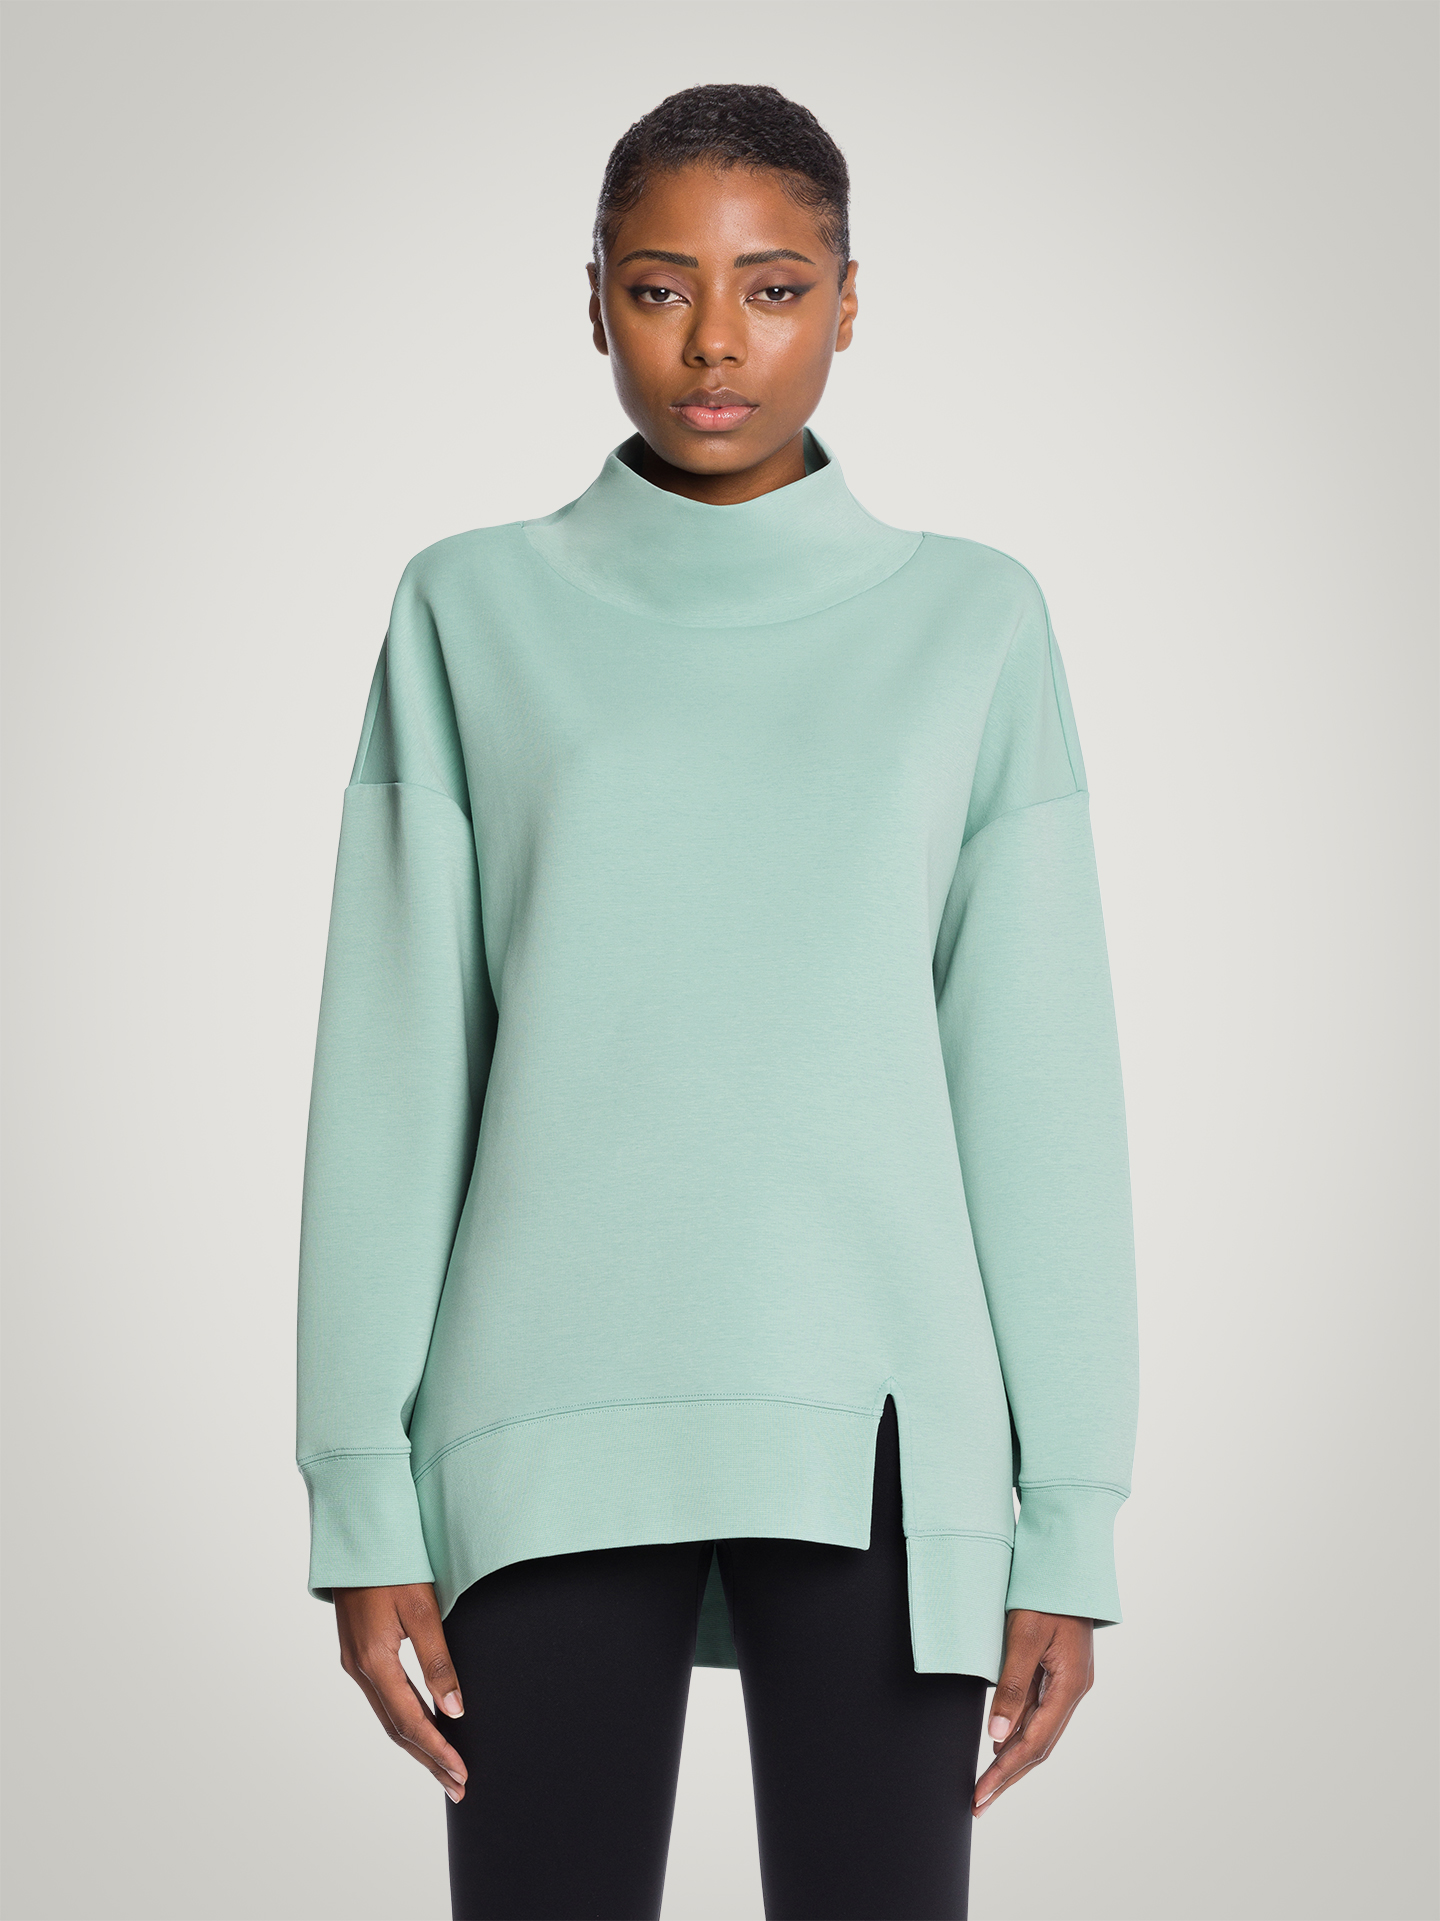 Wolford - Sweater Top Long Sleeves, Frau, icy mint, Größe: S günstig online kaufen